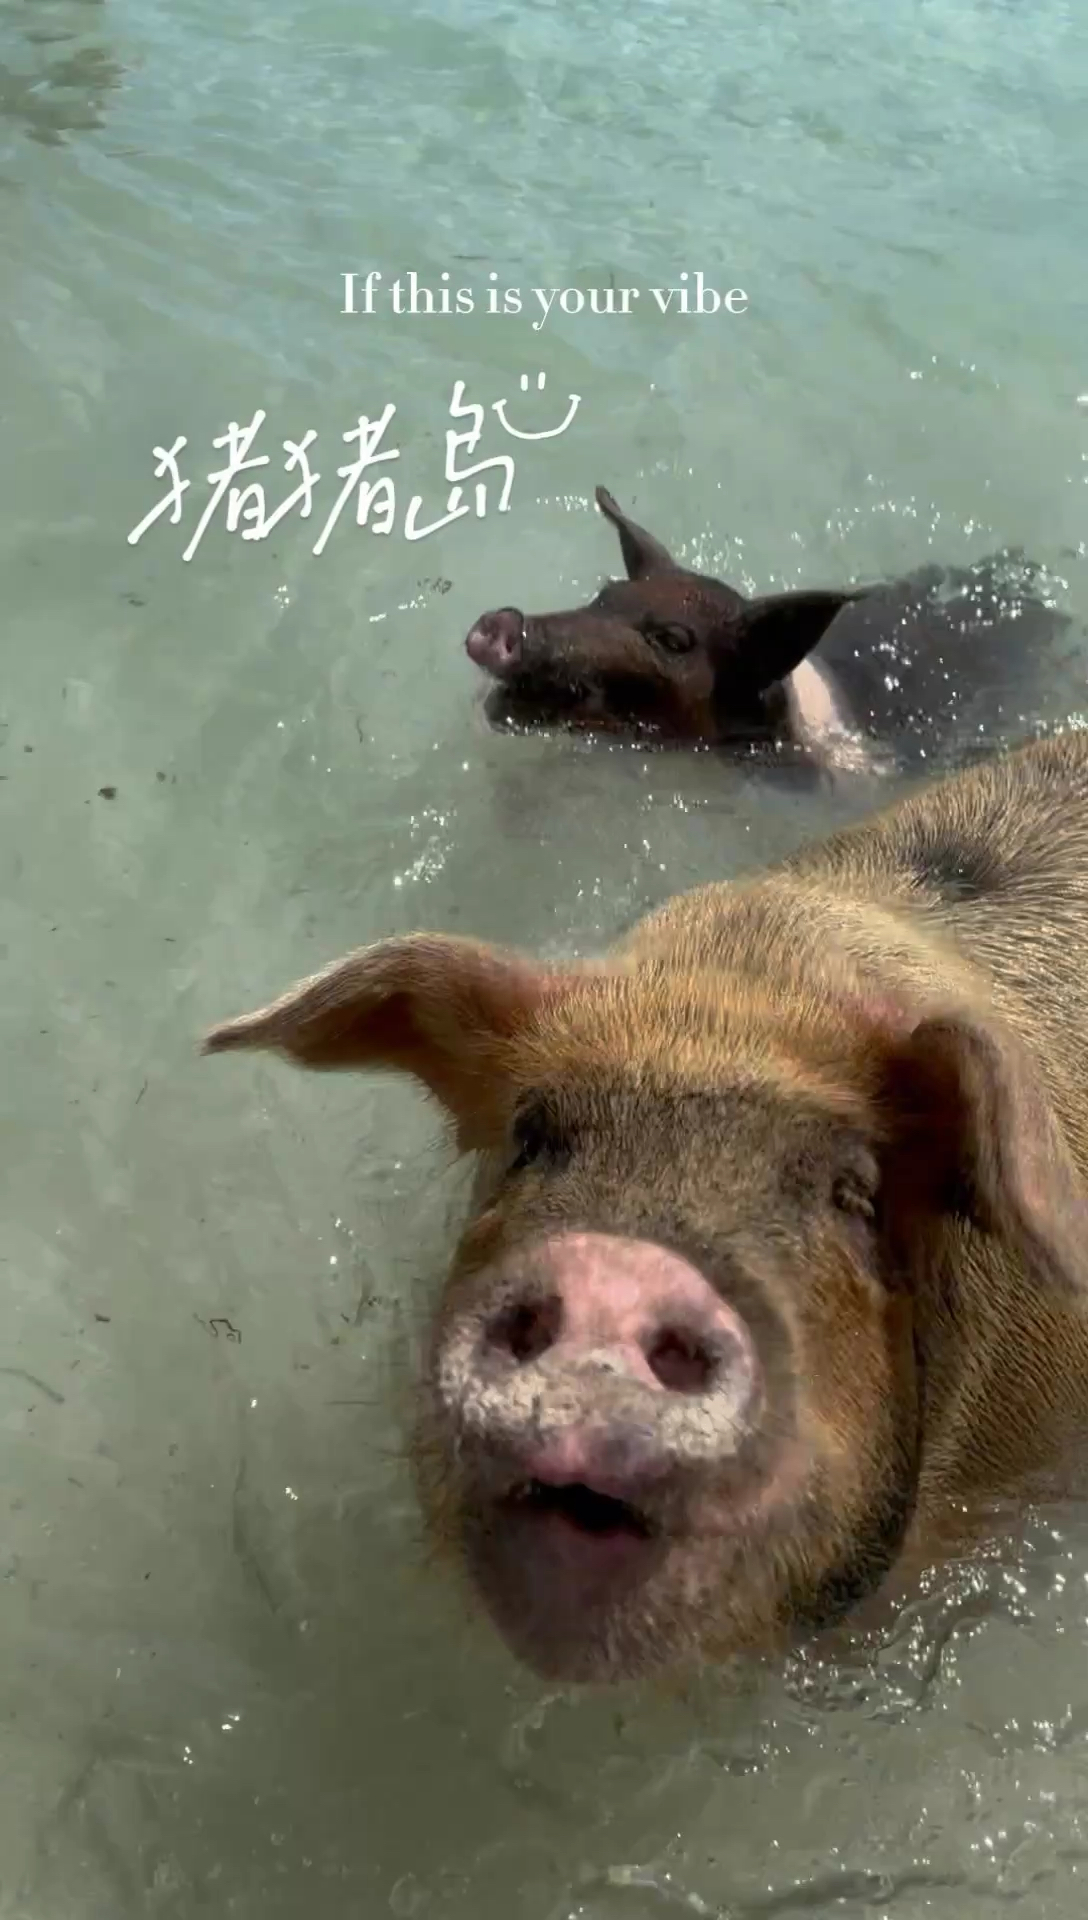 巴哈马猪猪岛上的猪一定是世界上最幸福的猪